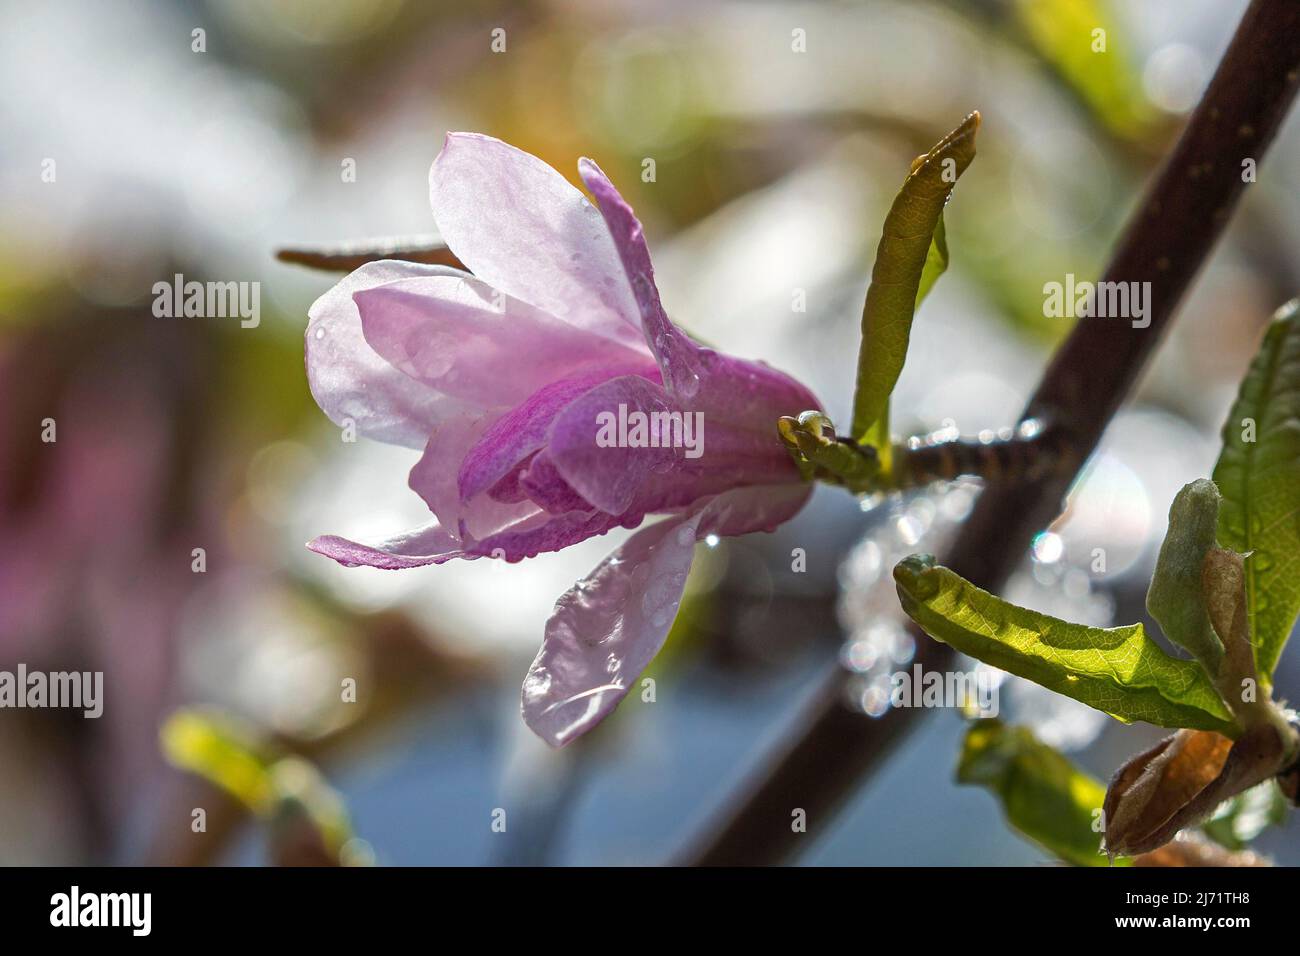 Blute der Sternmagolie (Magnolia stellata), Bade-Wurtemberg, Allemagne Banque D'Images